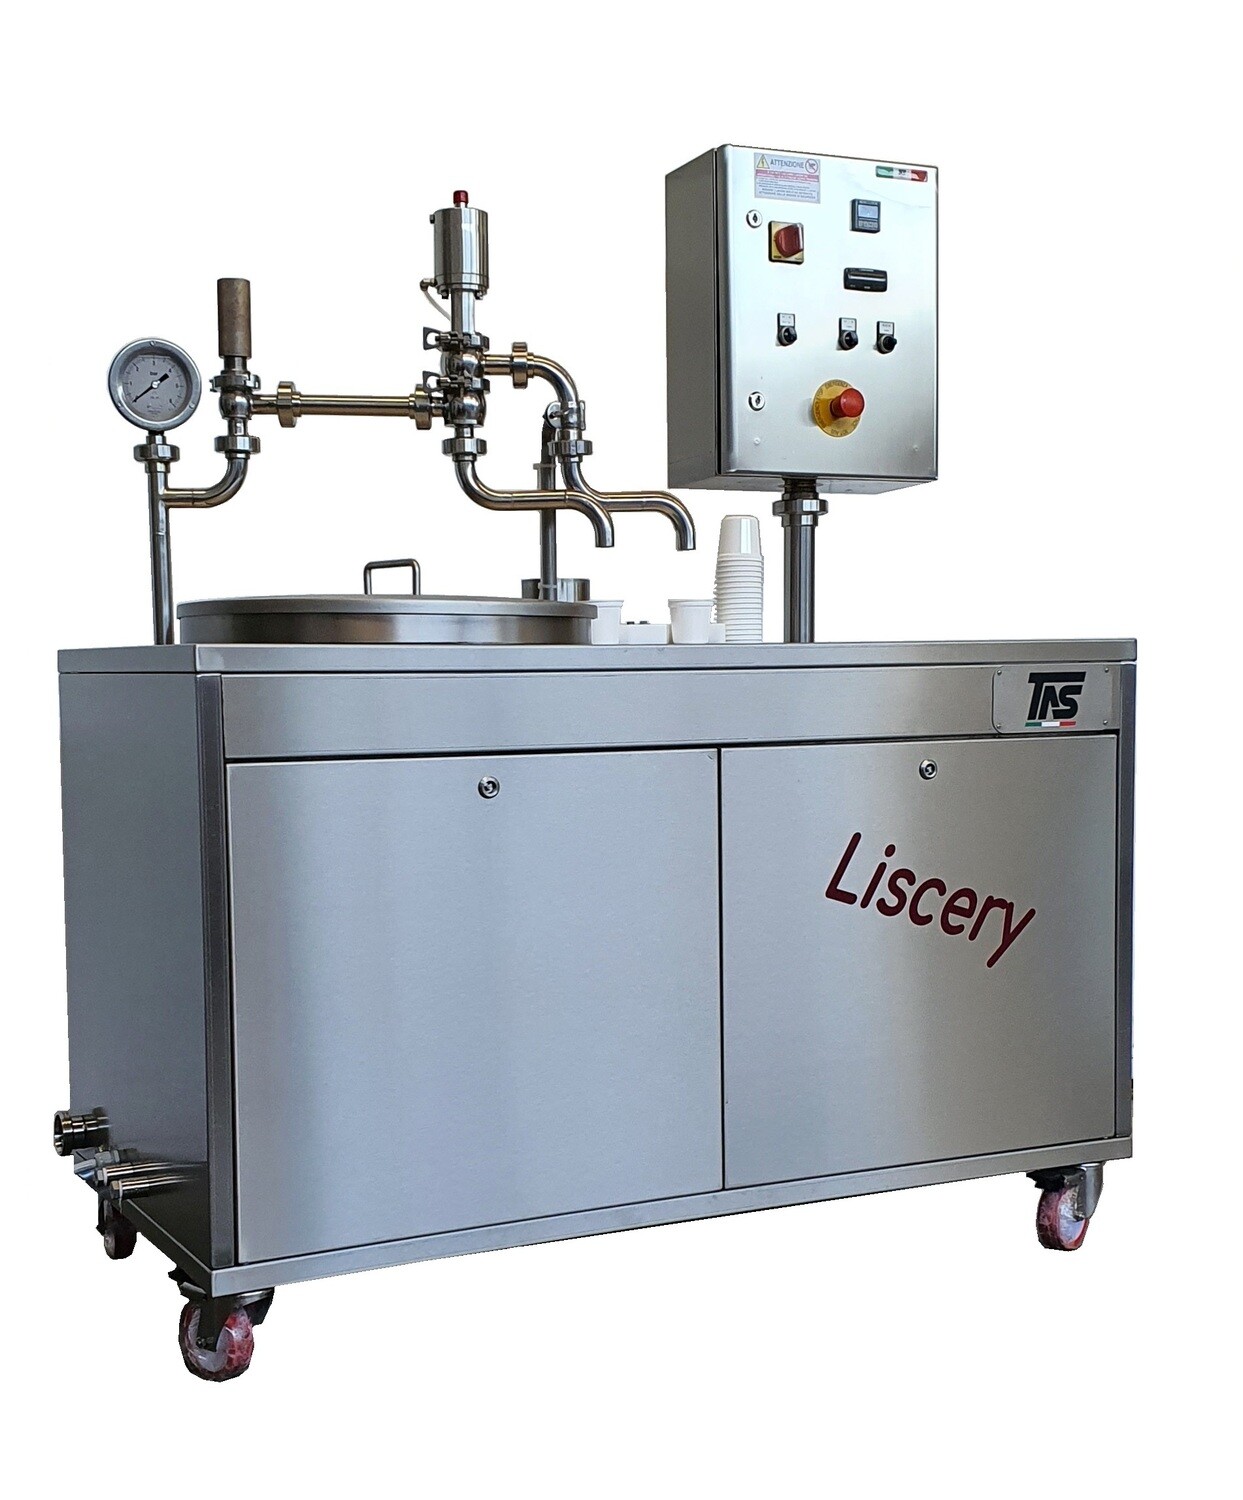 LISCIATRICE per prodotti liquidi o cremosi - Ns. modello "Liscery"